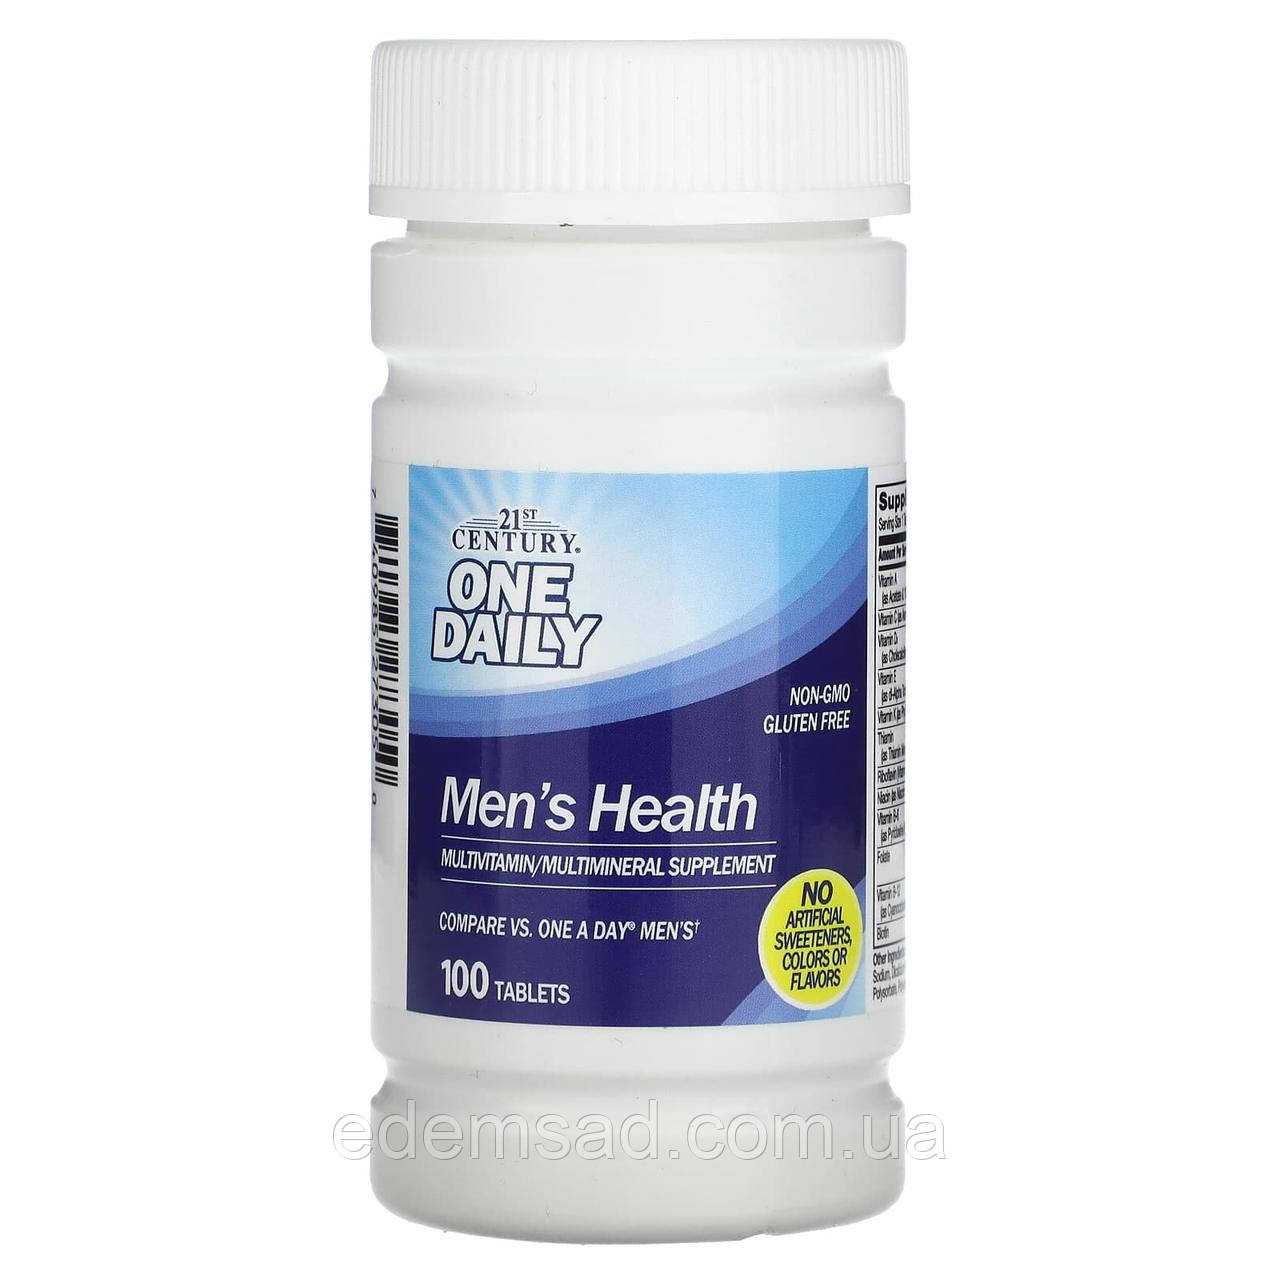 21st Century, One Daily, для чоловічого здоров'я, 100 таблеток